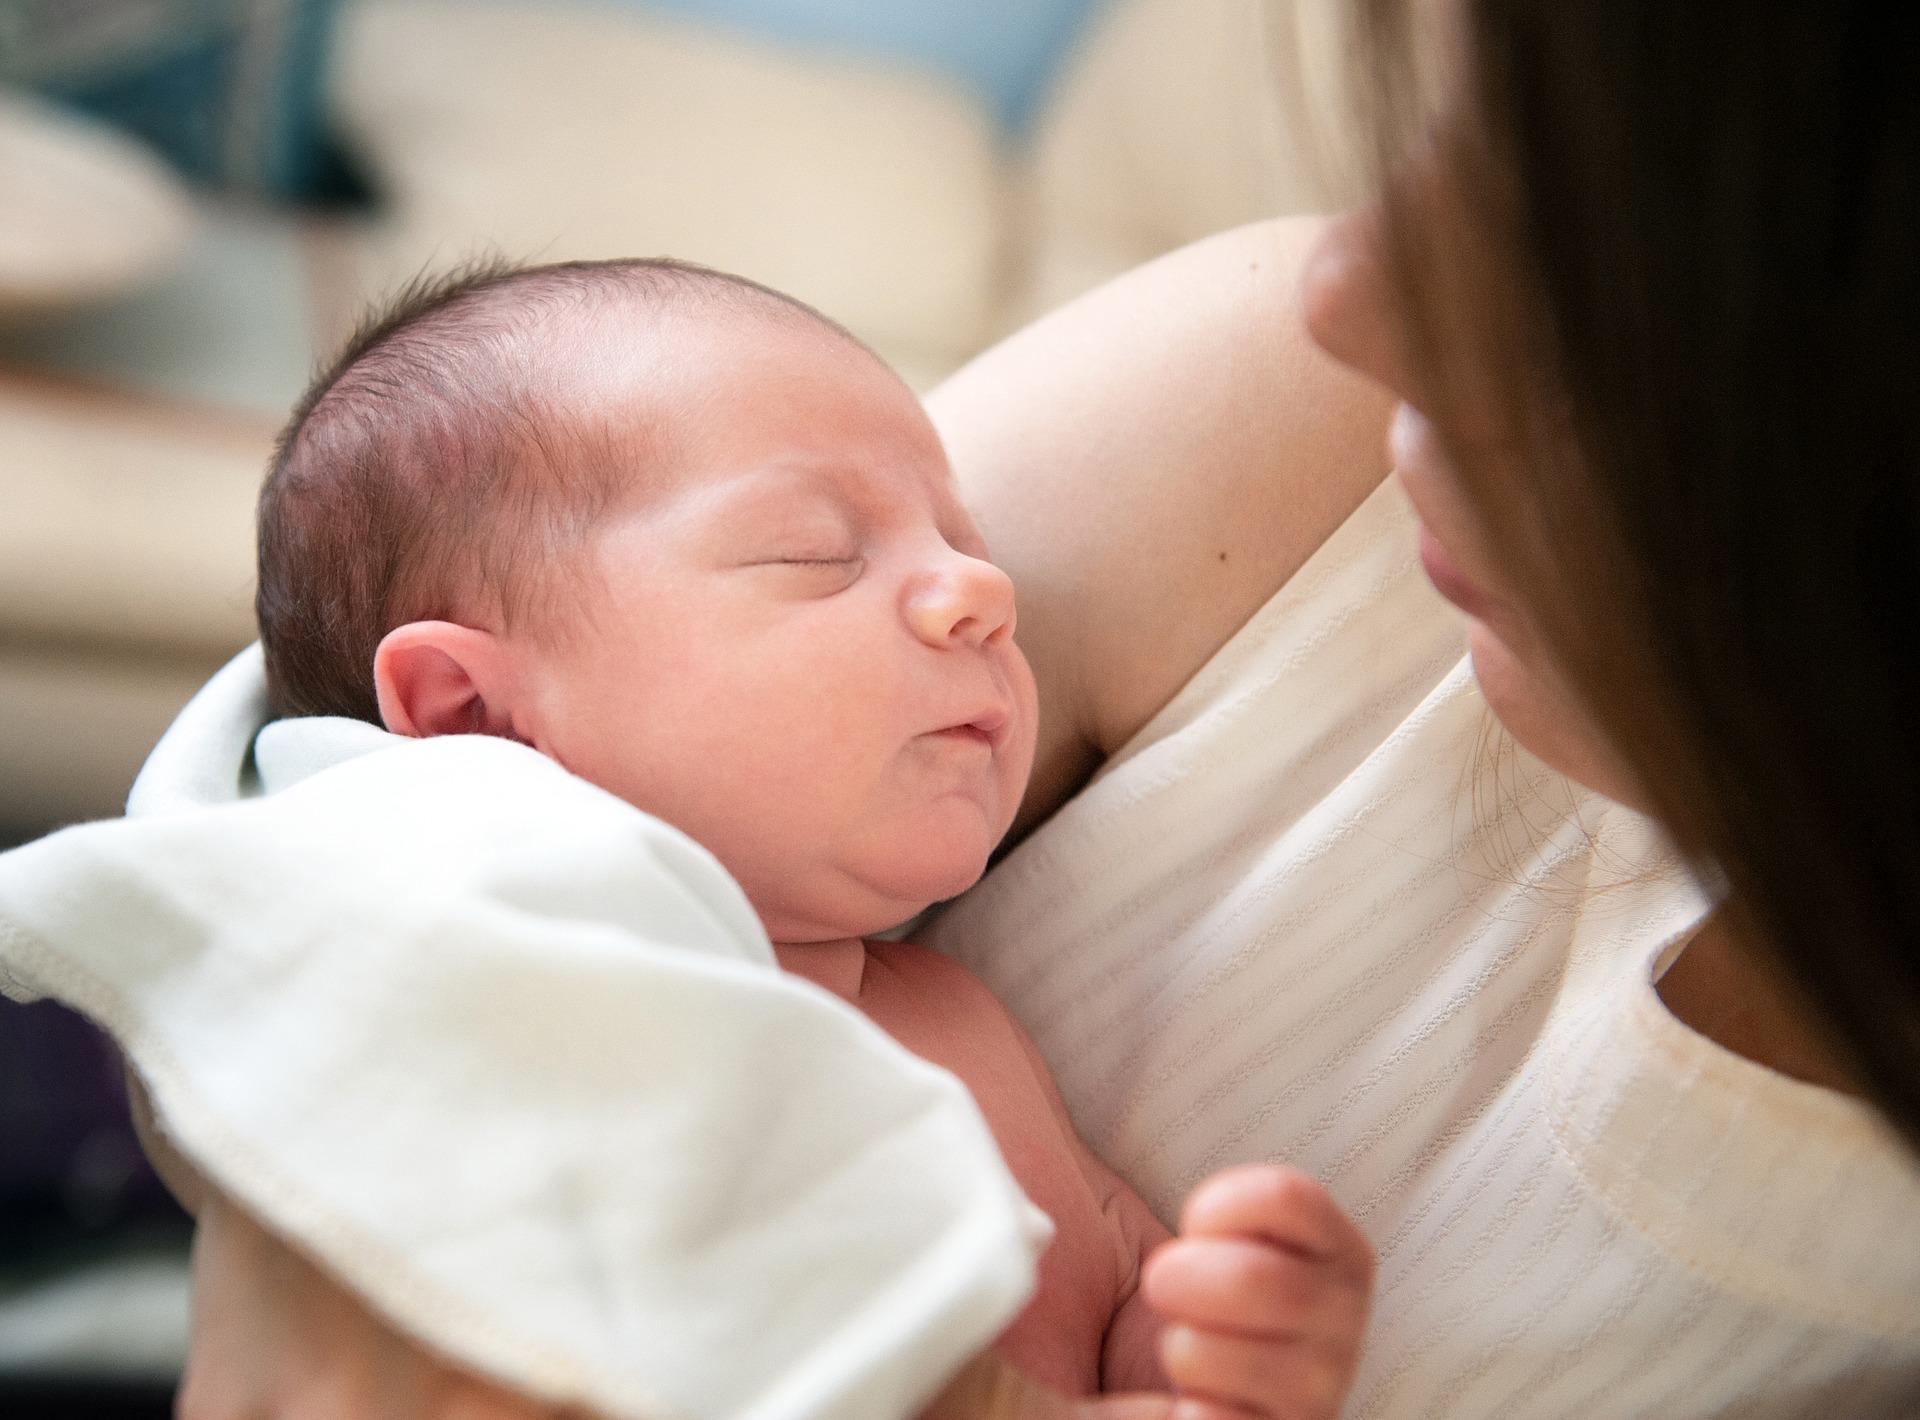 Salud: Cataratas pueden afectar la visión de recién nacidos y jóvenes